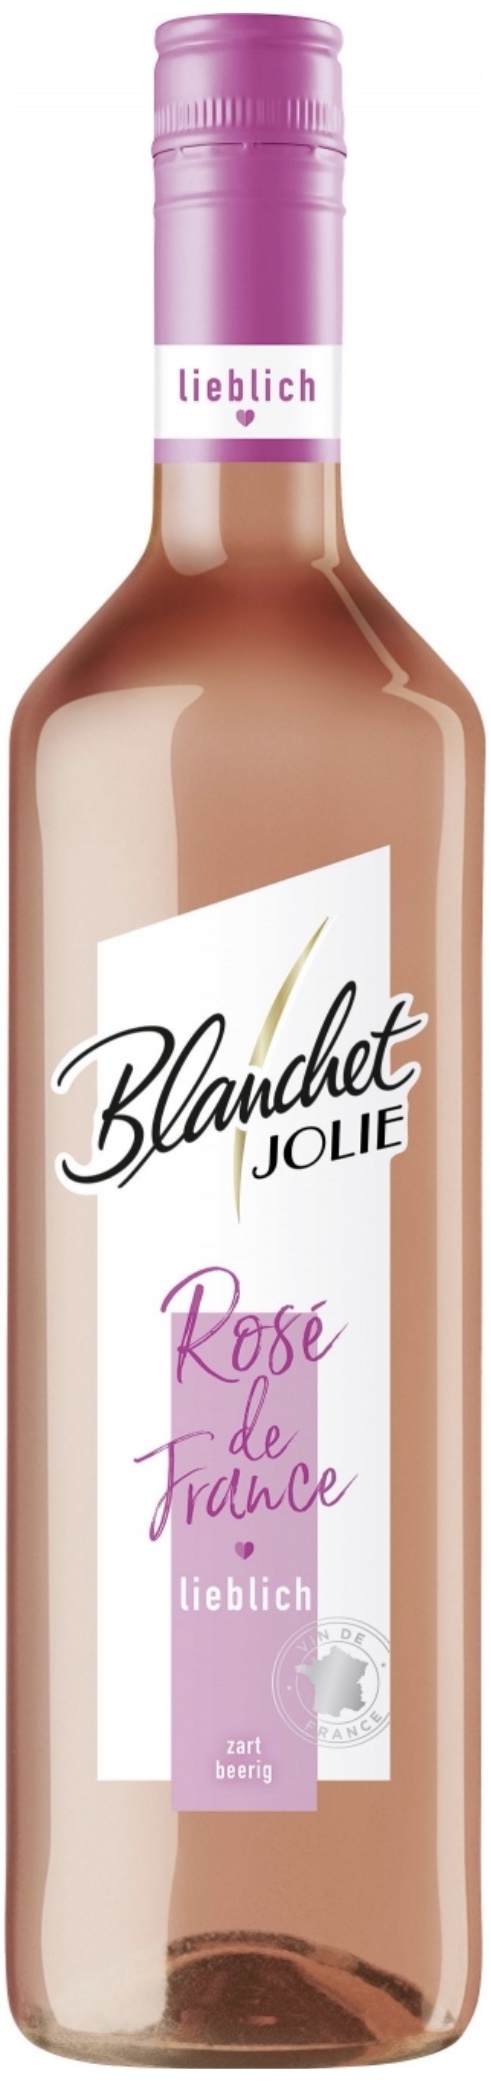 Blanchet Jolie Rose de France lieblich 11,5% vol. 0,75L